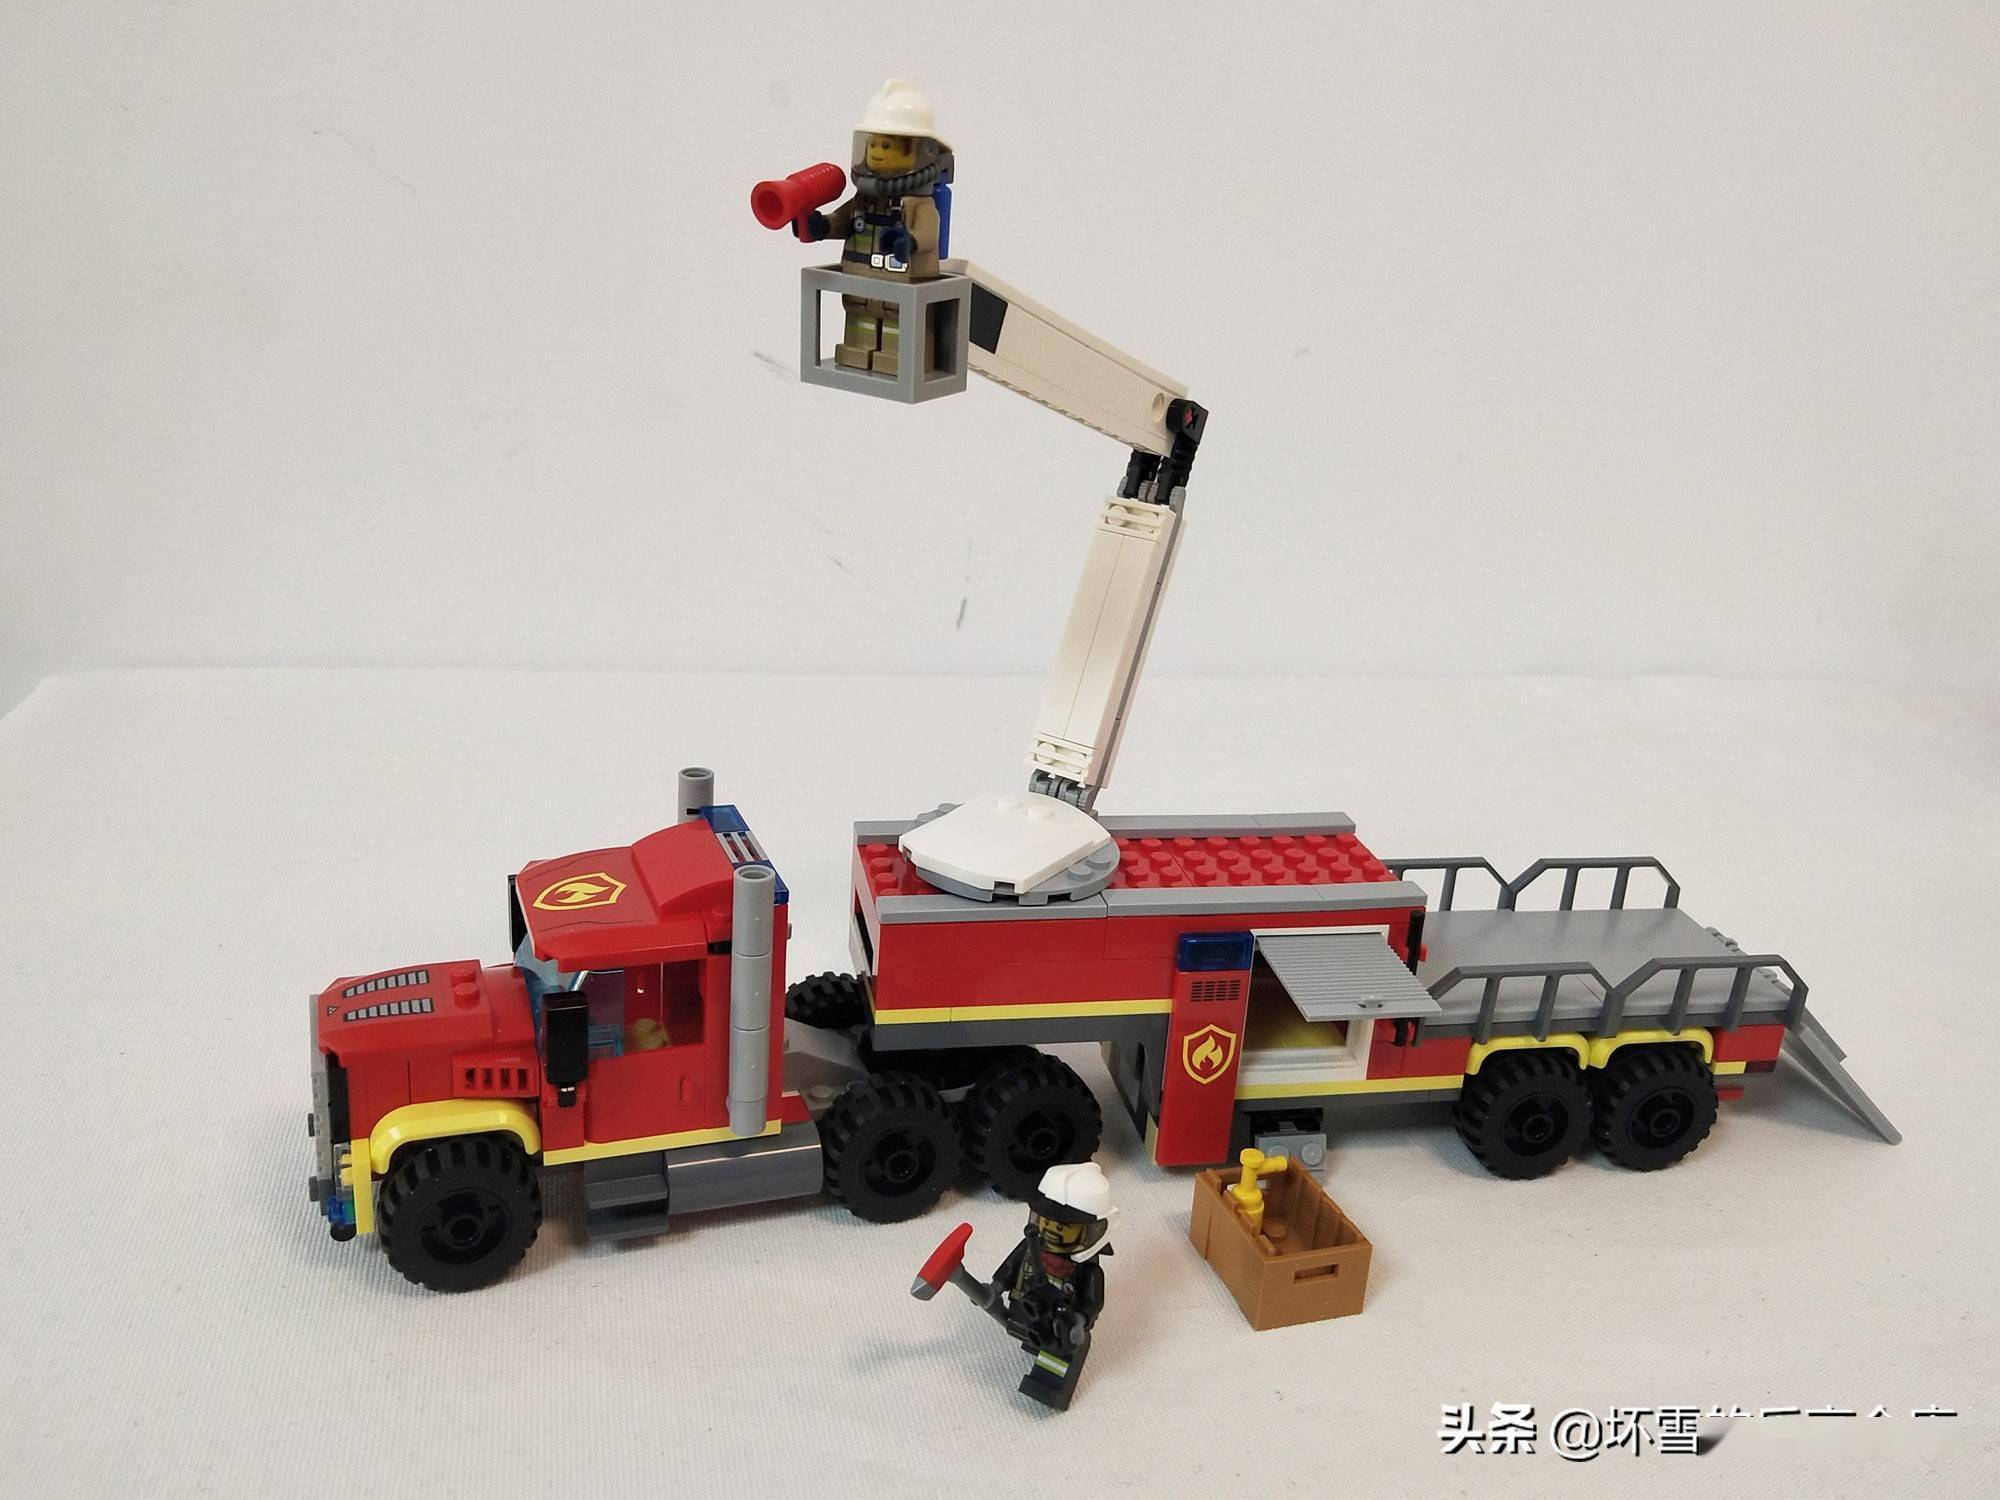 喜欢消防车的朋友,这款乐高60282消防移动指挥车收入囊中了吗?